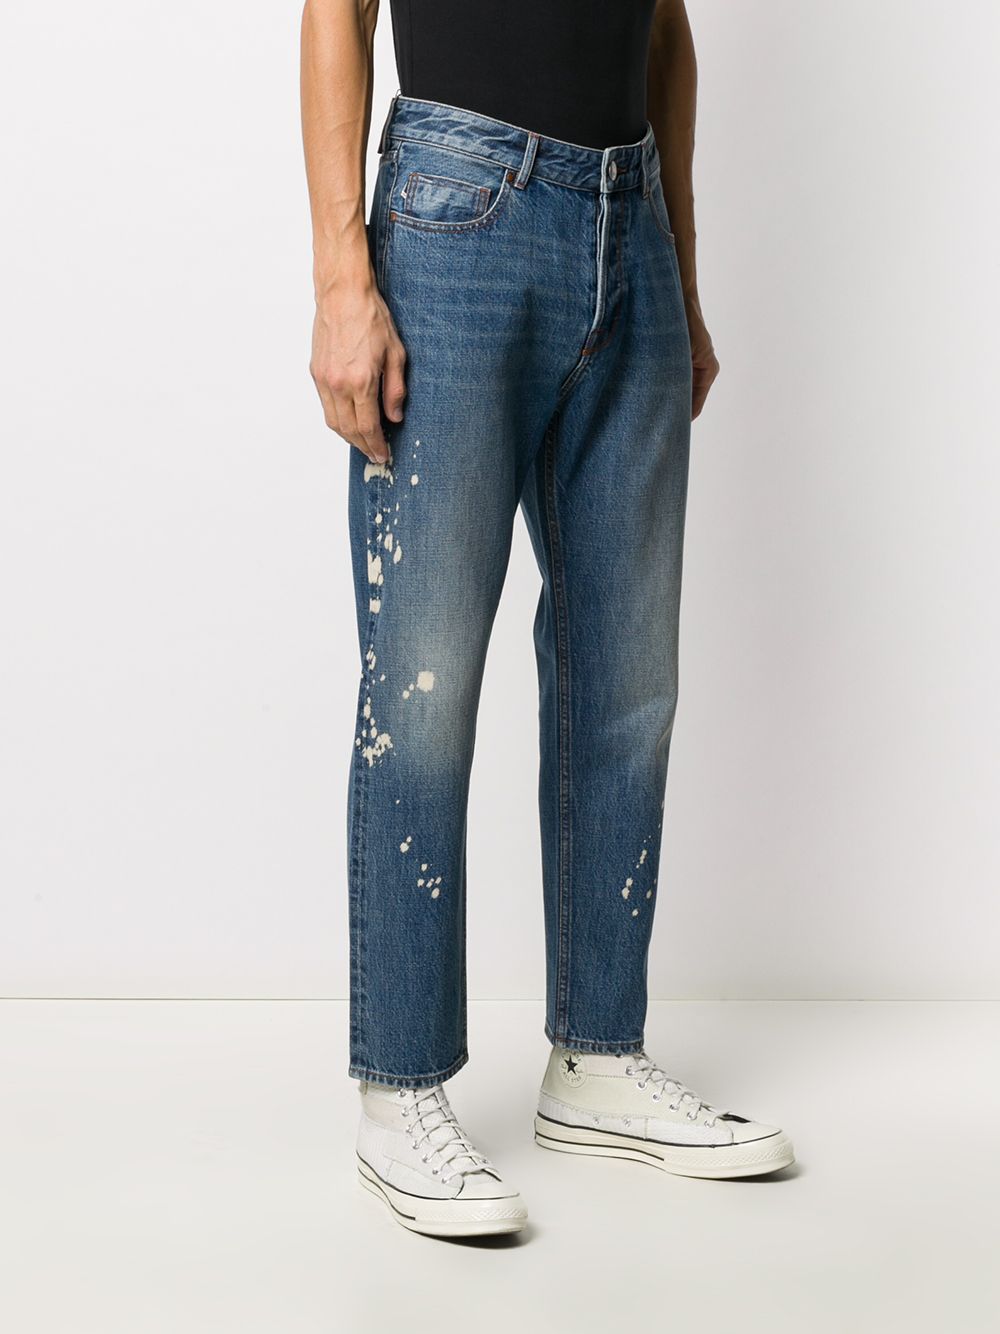 фото Emporio armani джинсы с эффектом разбрызганной краски